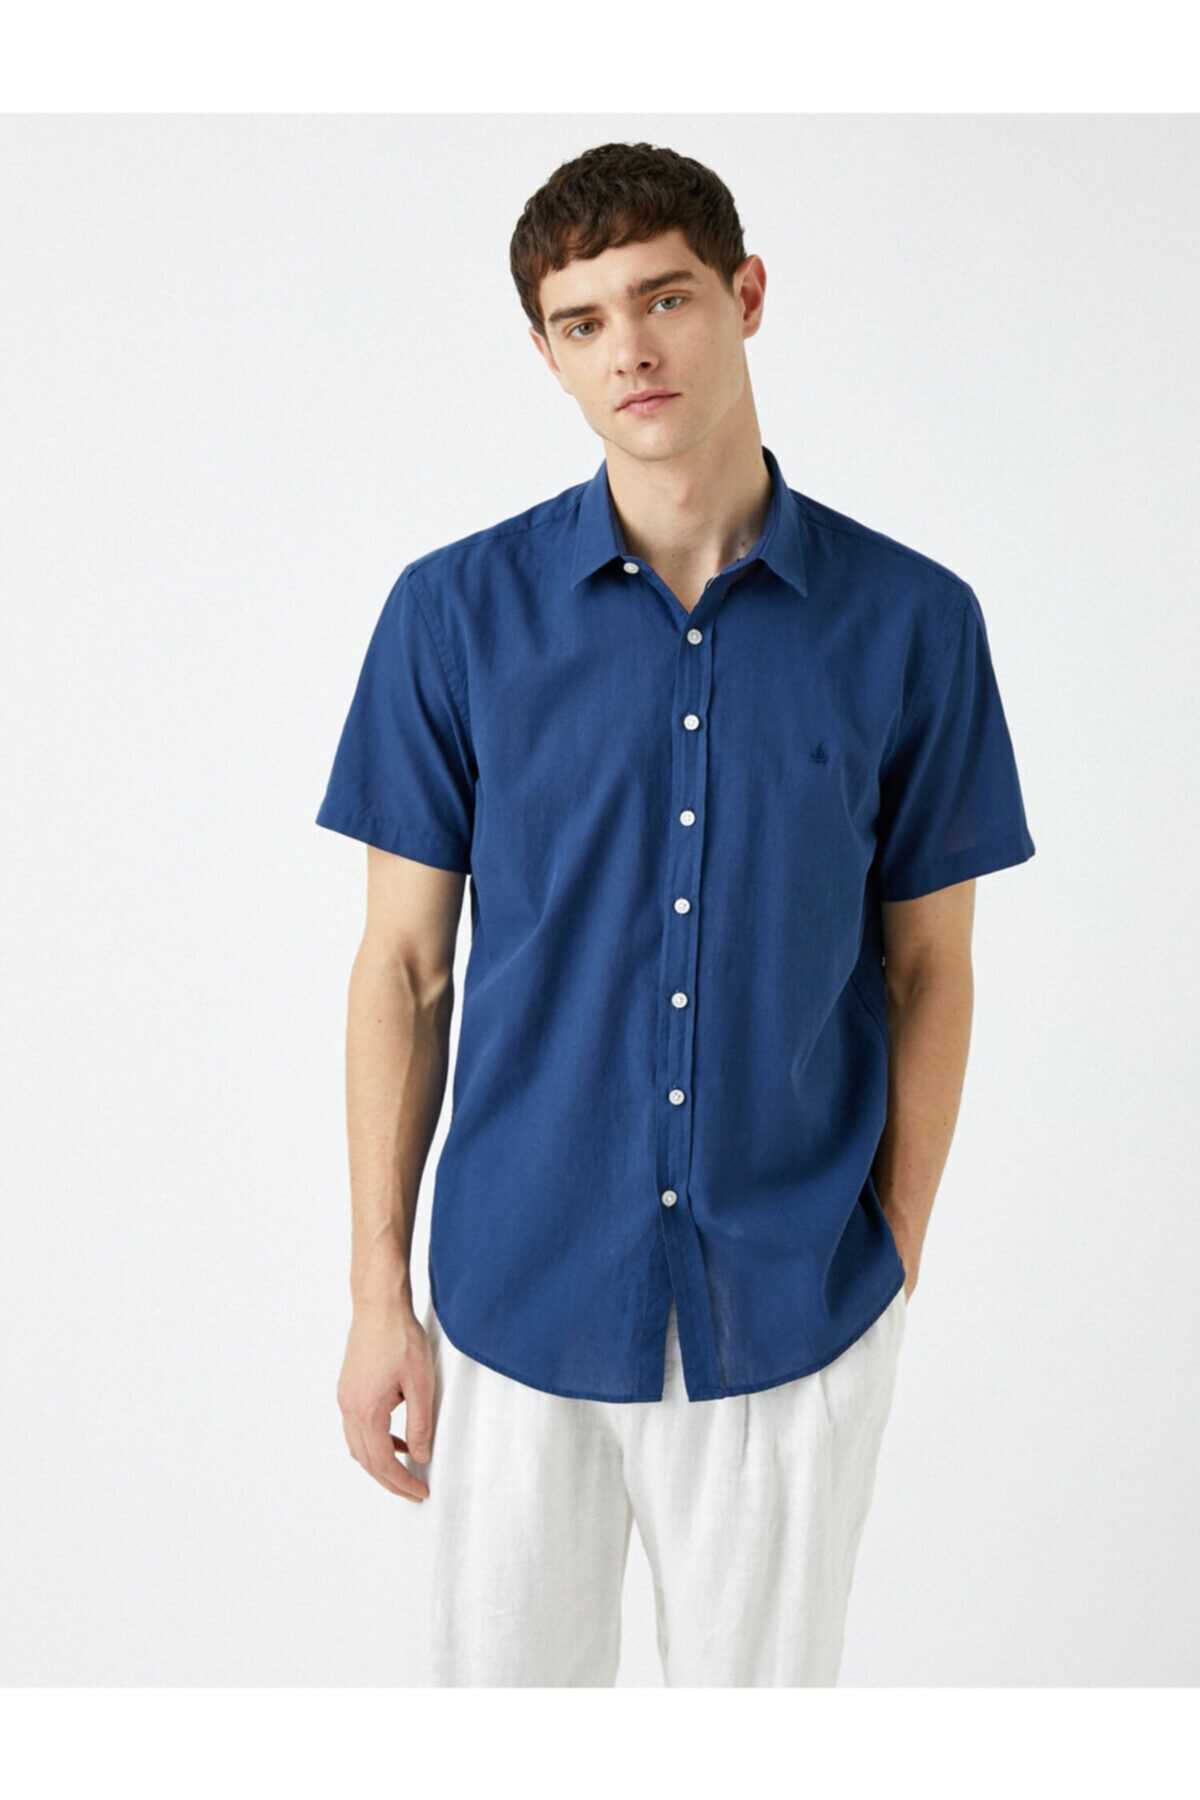 فروشگاه پیراهن مردانه تابستانی برند کوتون رنگ لاجوردی کد ty90105904